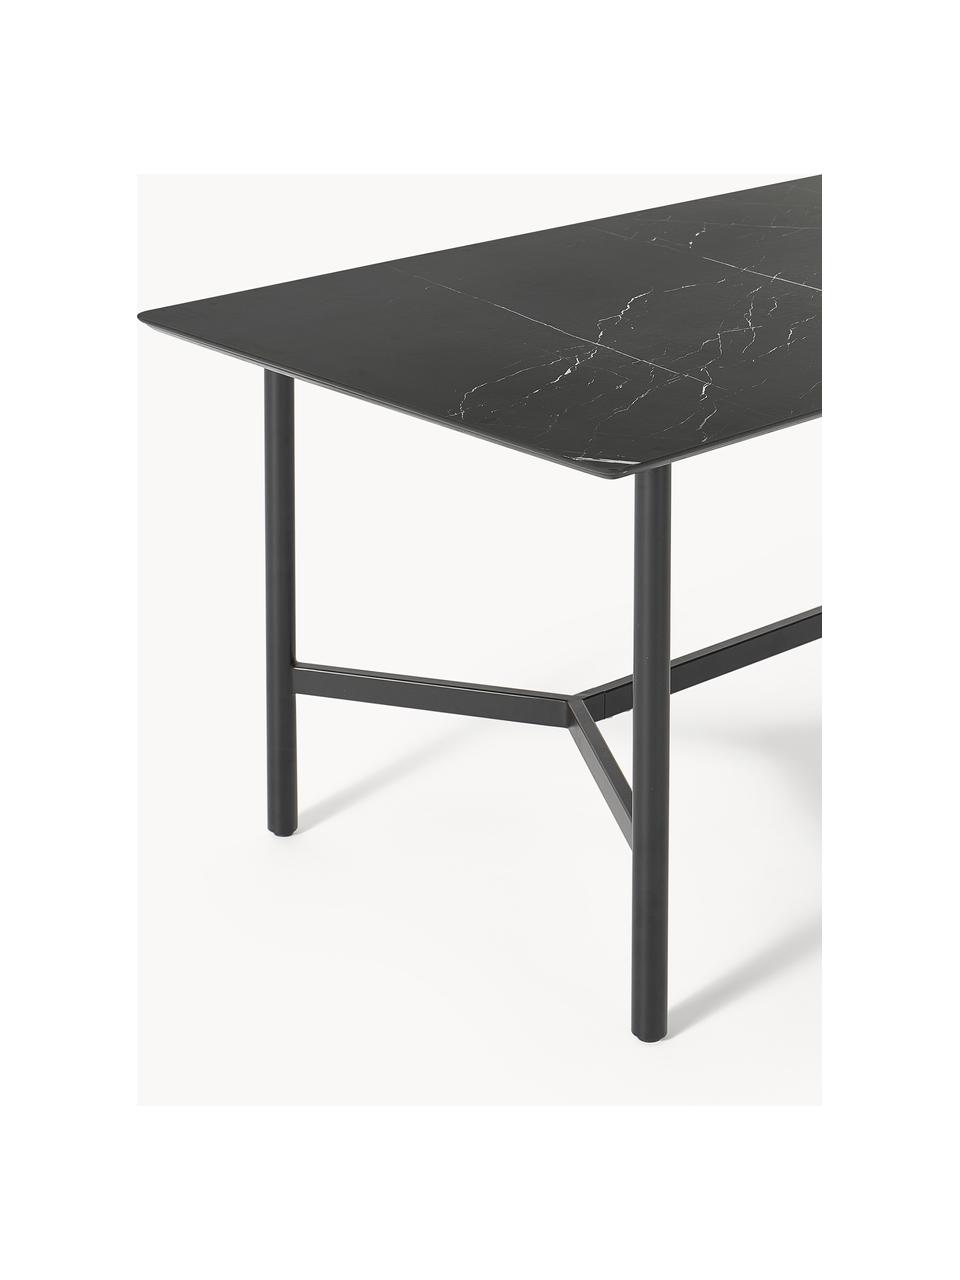 Tuineettafel Connor in marmerlook, Tafelblad: keramiek, Frame: gelakt metaal, Marmerlook, zwart, B 160 x D 85 cm